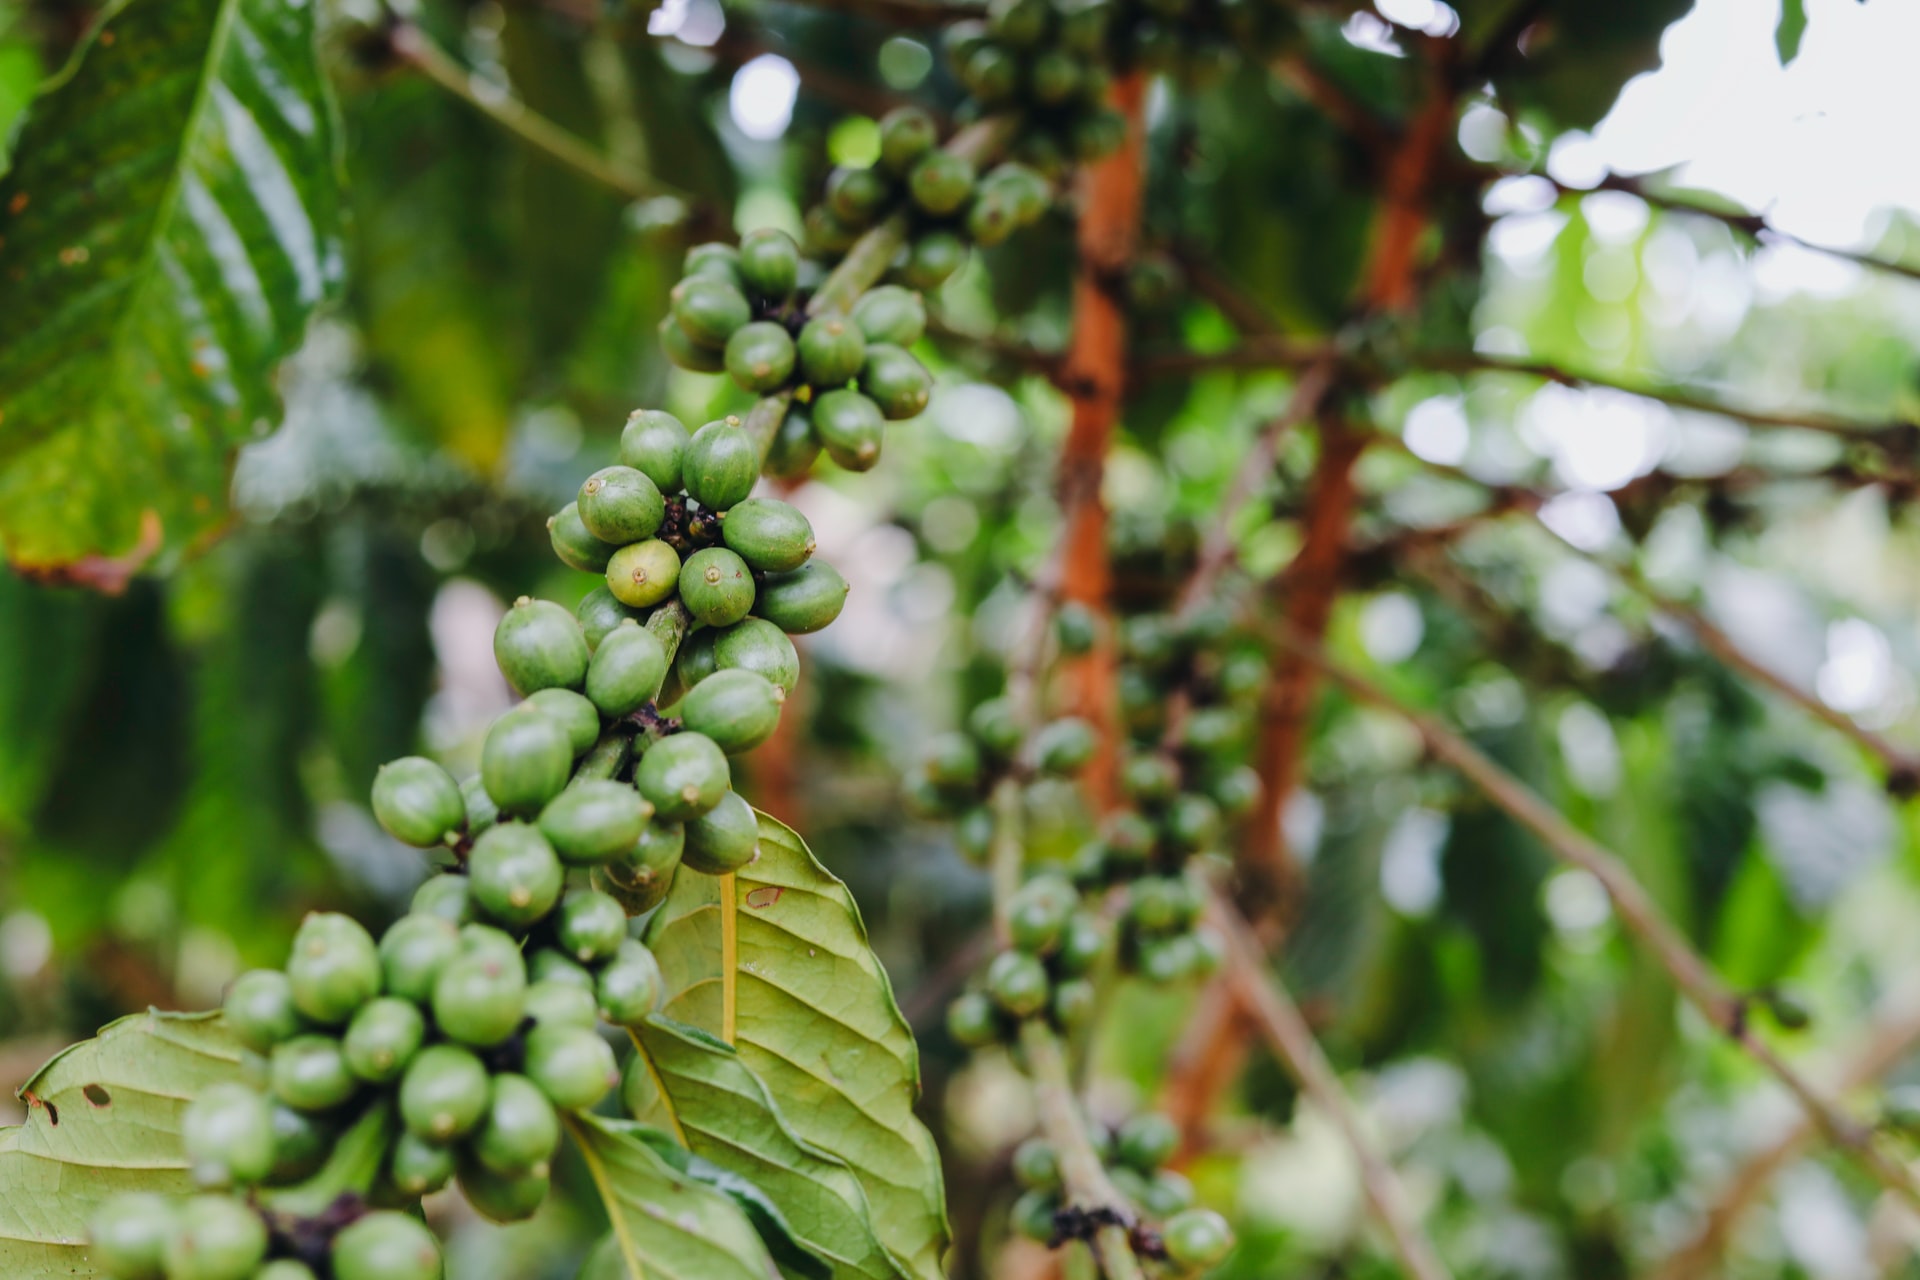 Giá cà phê 23/8: Nguồn cung Robusta tiếp tục cạn, các quỹ đầu cơ làm náo động giá cà phê - Ảnh 3.